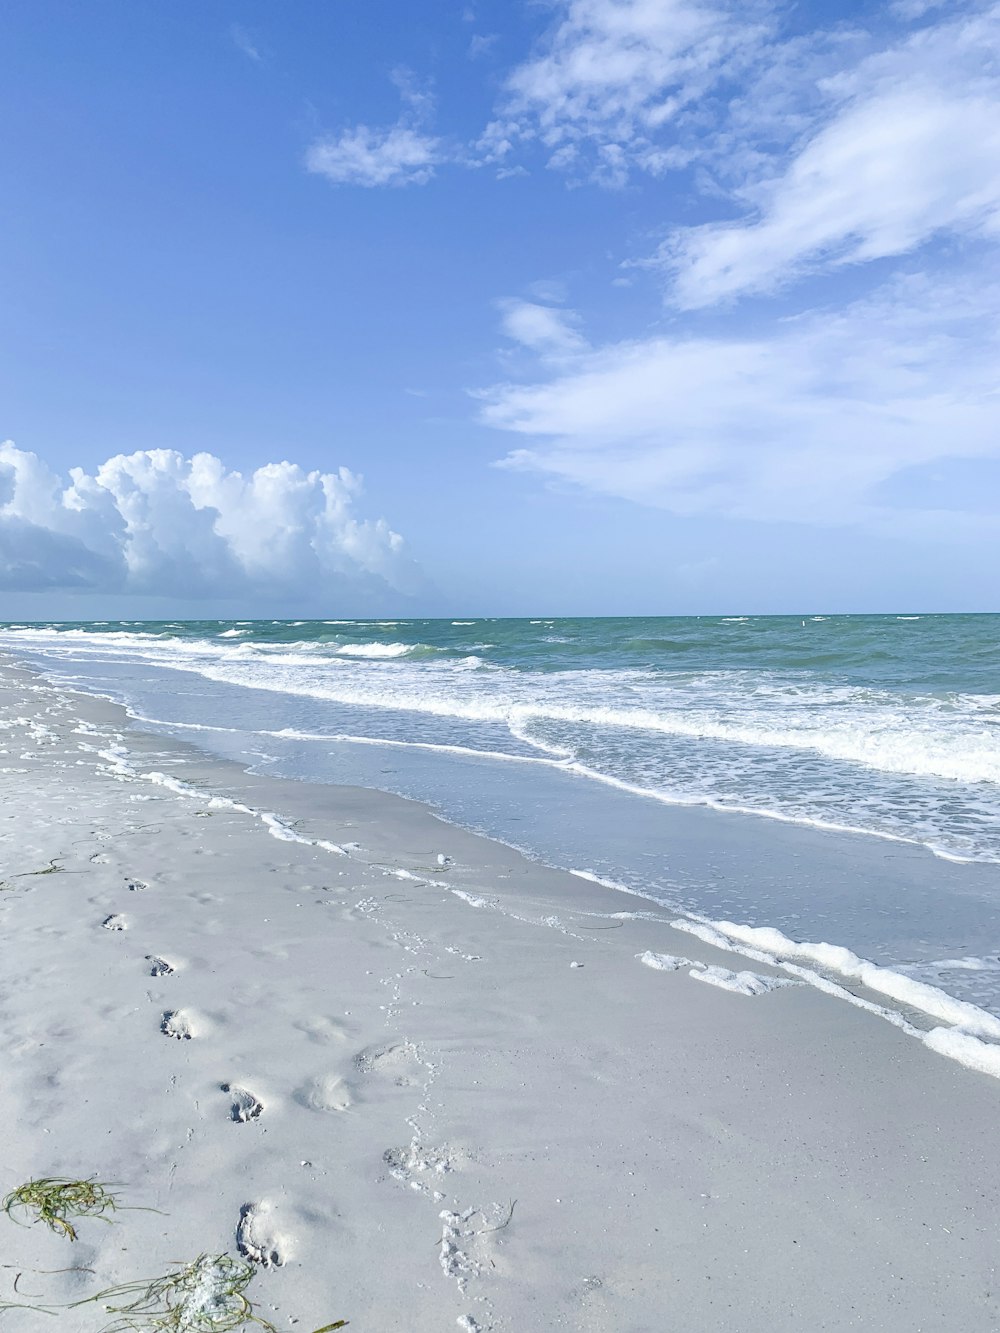 une plage de sable avec des empreintes dans le sable